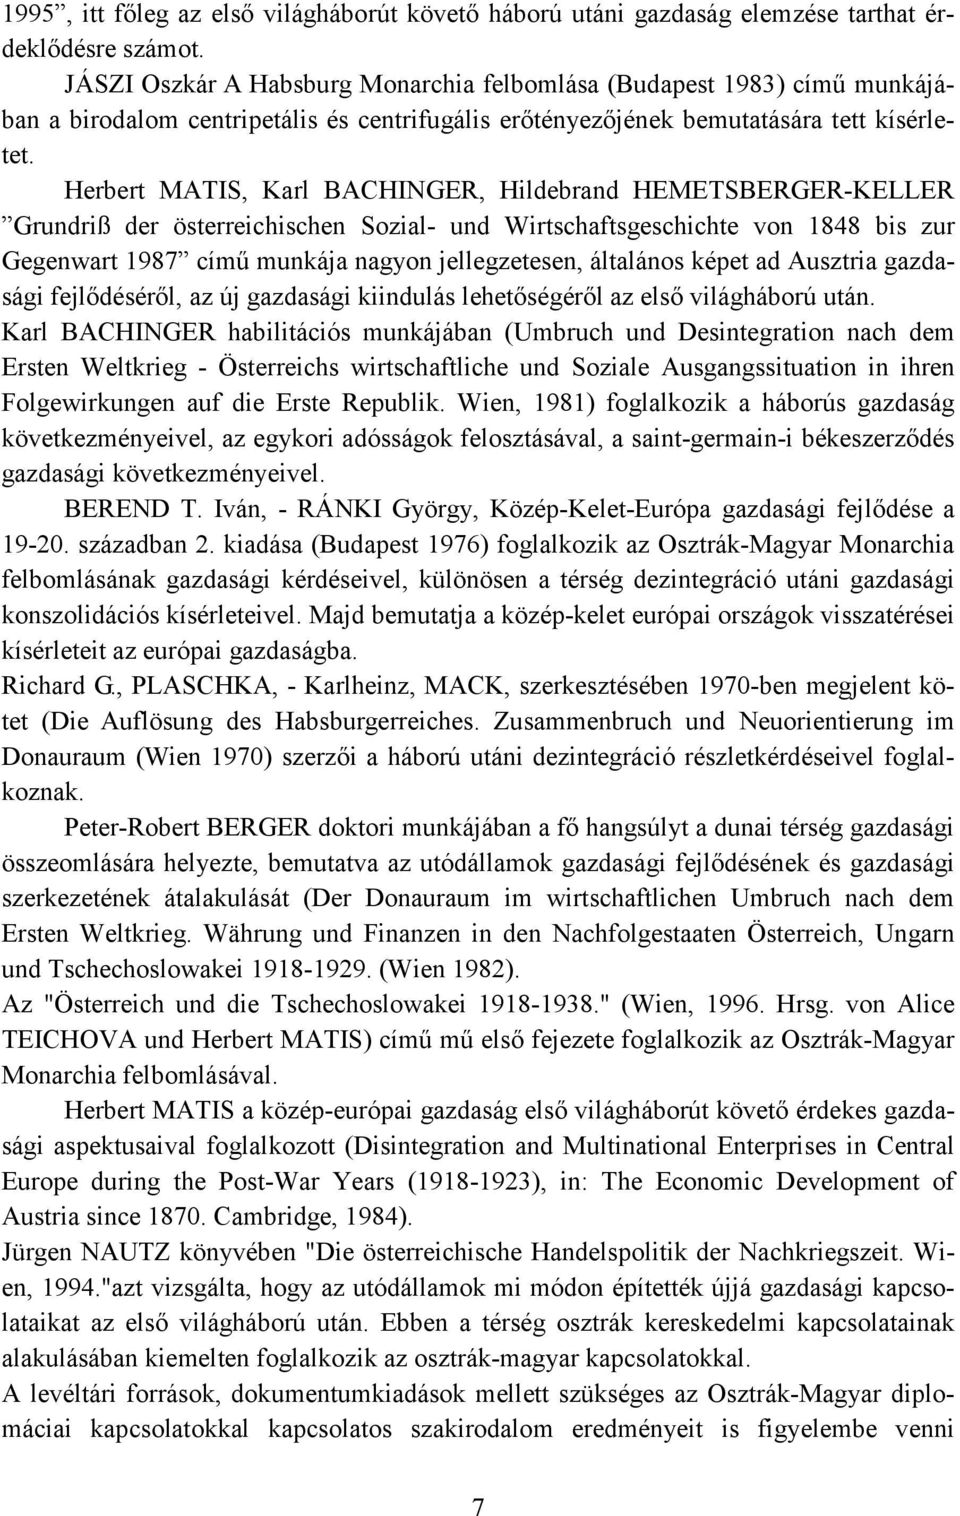 Herbert MATIS, Karl BACHINGER, Hildebrand HEMETSBERGER-KELLER Grundriß der östereichischen Sozial- und Wirtschaftsgeschichte von 1848 bis zur Gegenwart 1987 című munkája nagyon jelegzetesen,